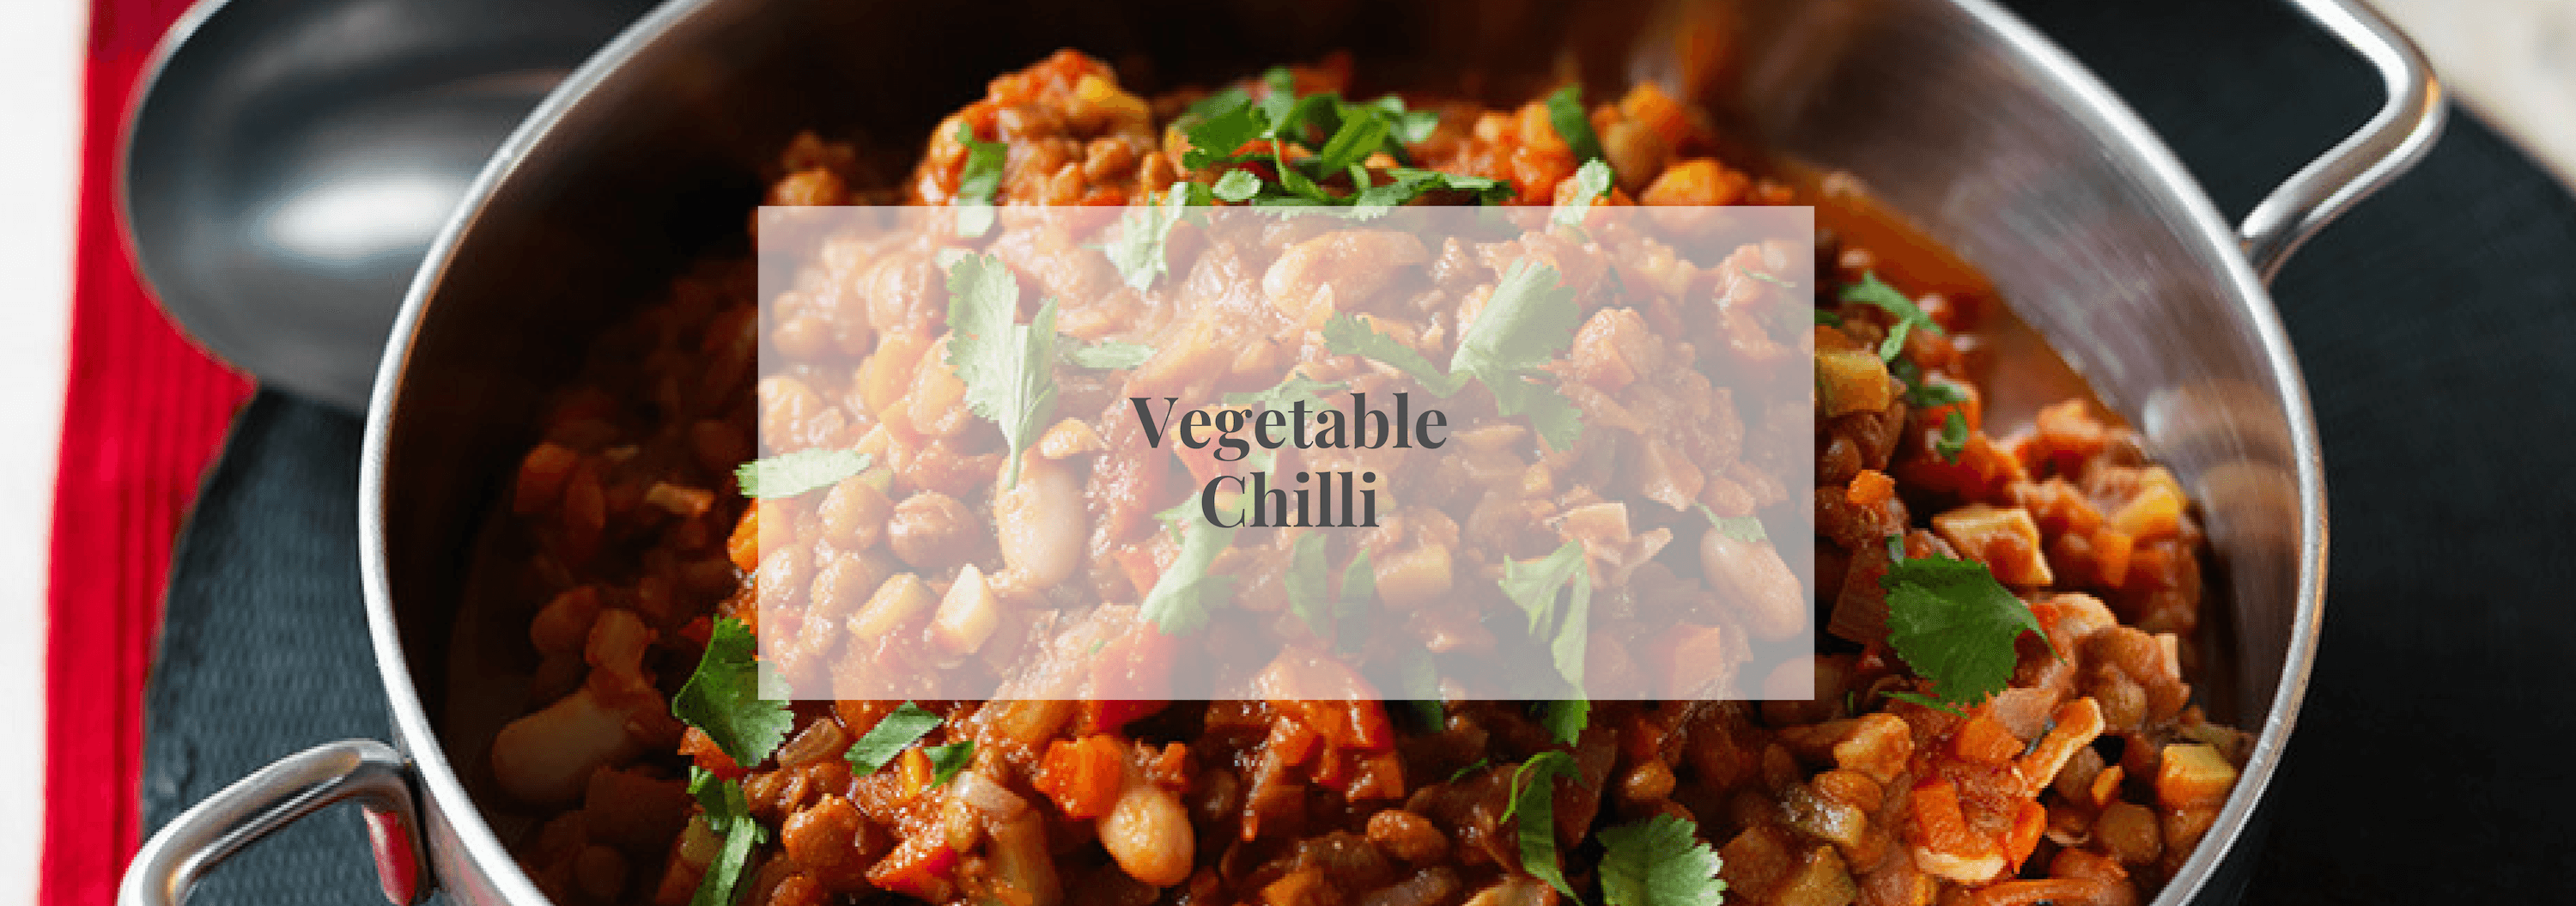 Vegetable Chili - Numi